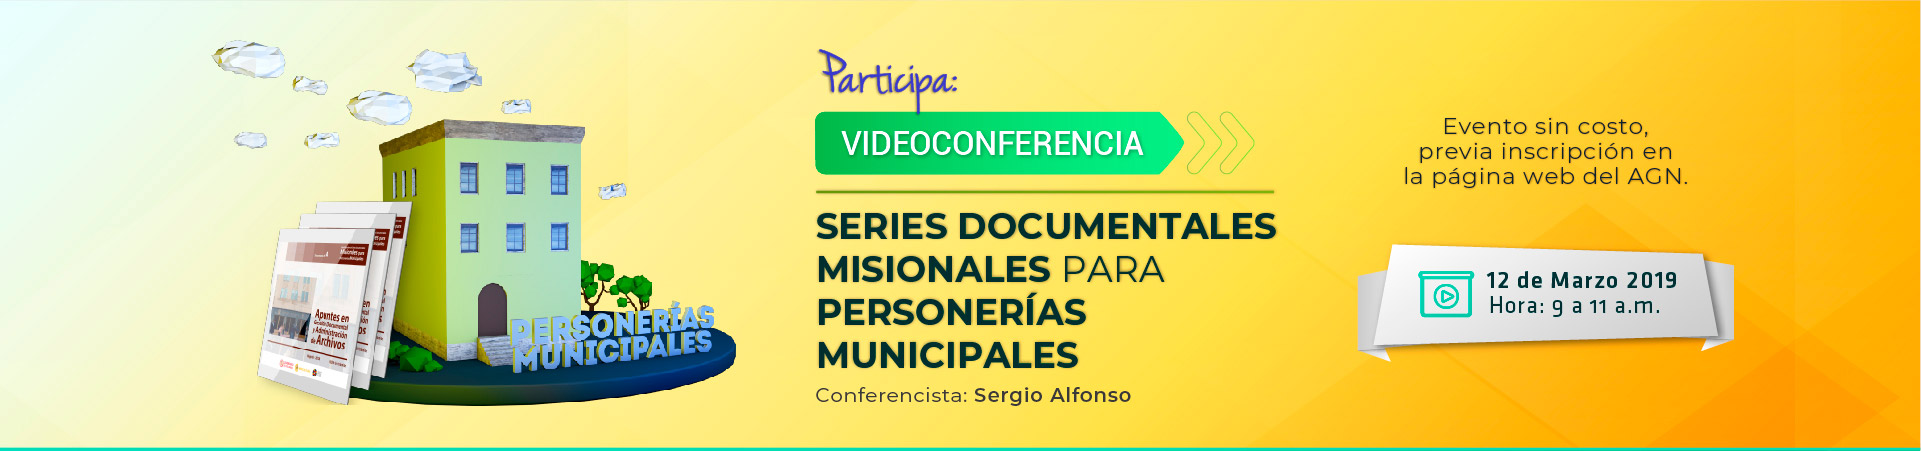 imagen videoconferencia series documentales misionales para las personerías municipales